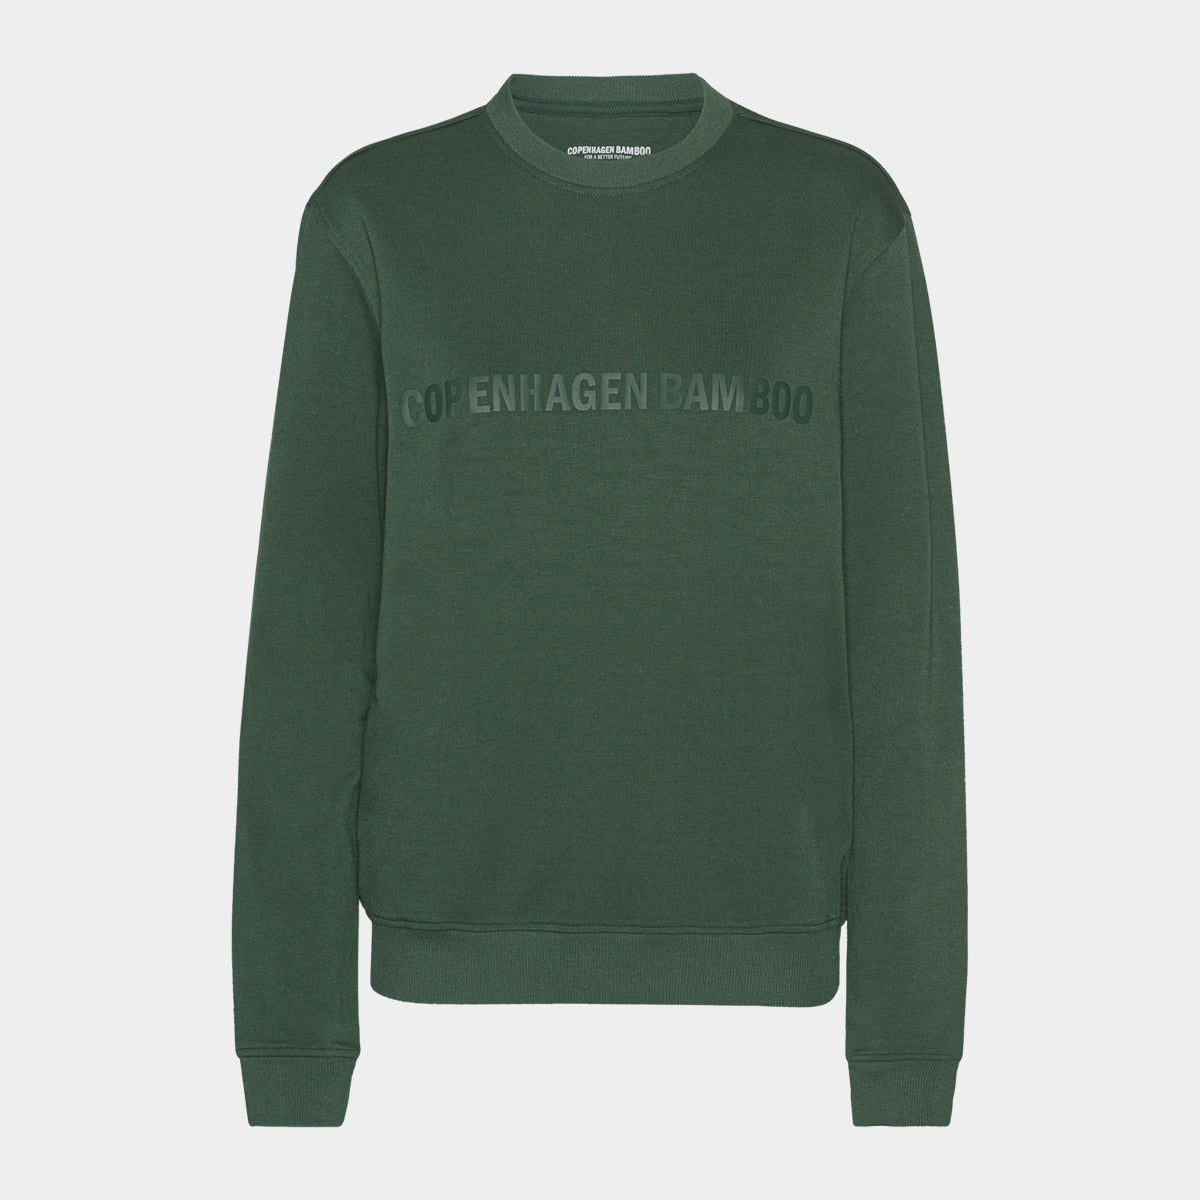 Se Grøn bambus sweatshirt til dame med logo fra Copenhagen Bamboo, S hos Bambustøj.dk